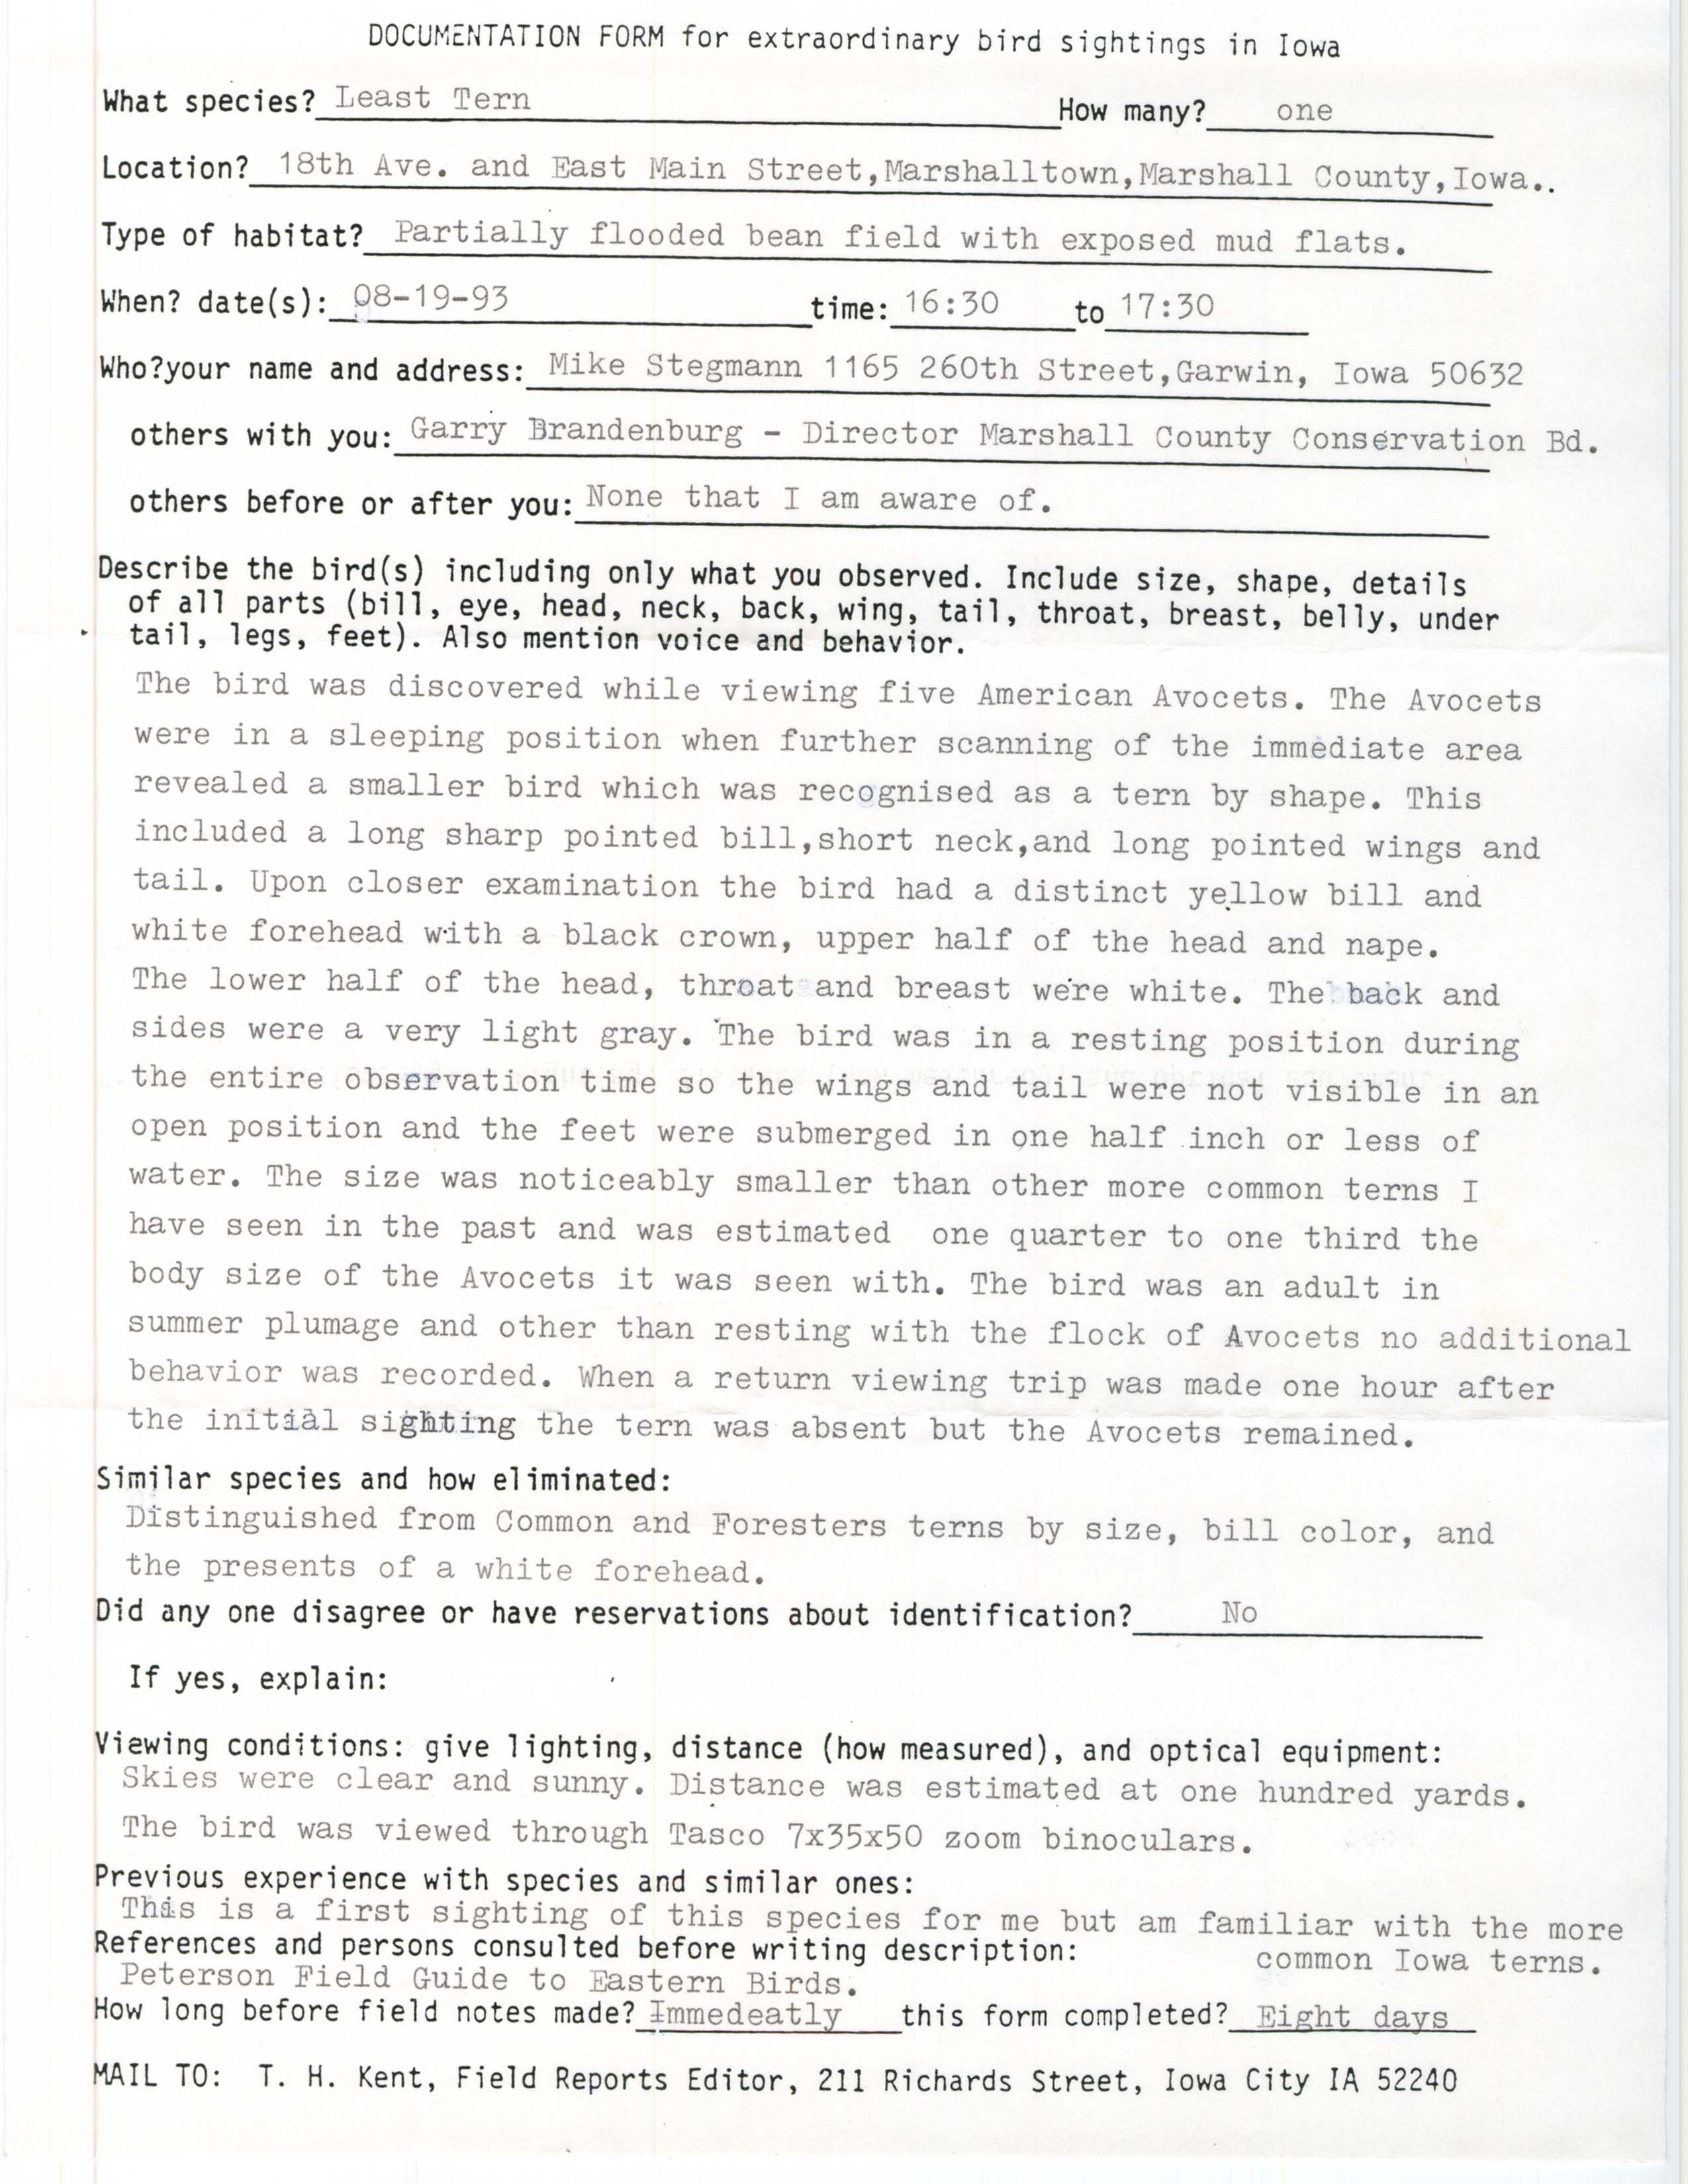 Rare bird documentation form for Least Tern at Marshalltown, 1993